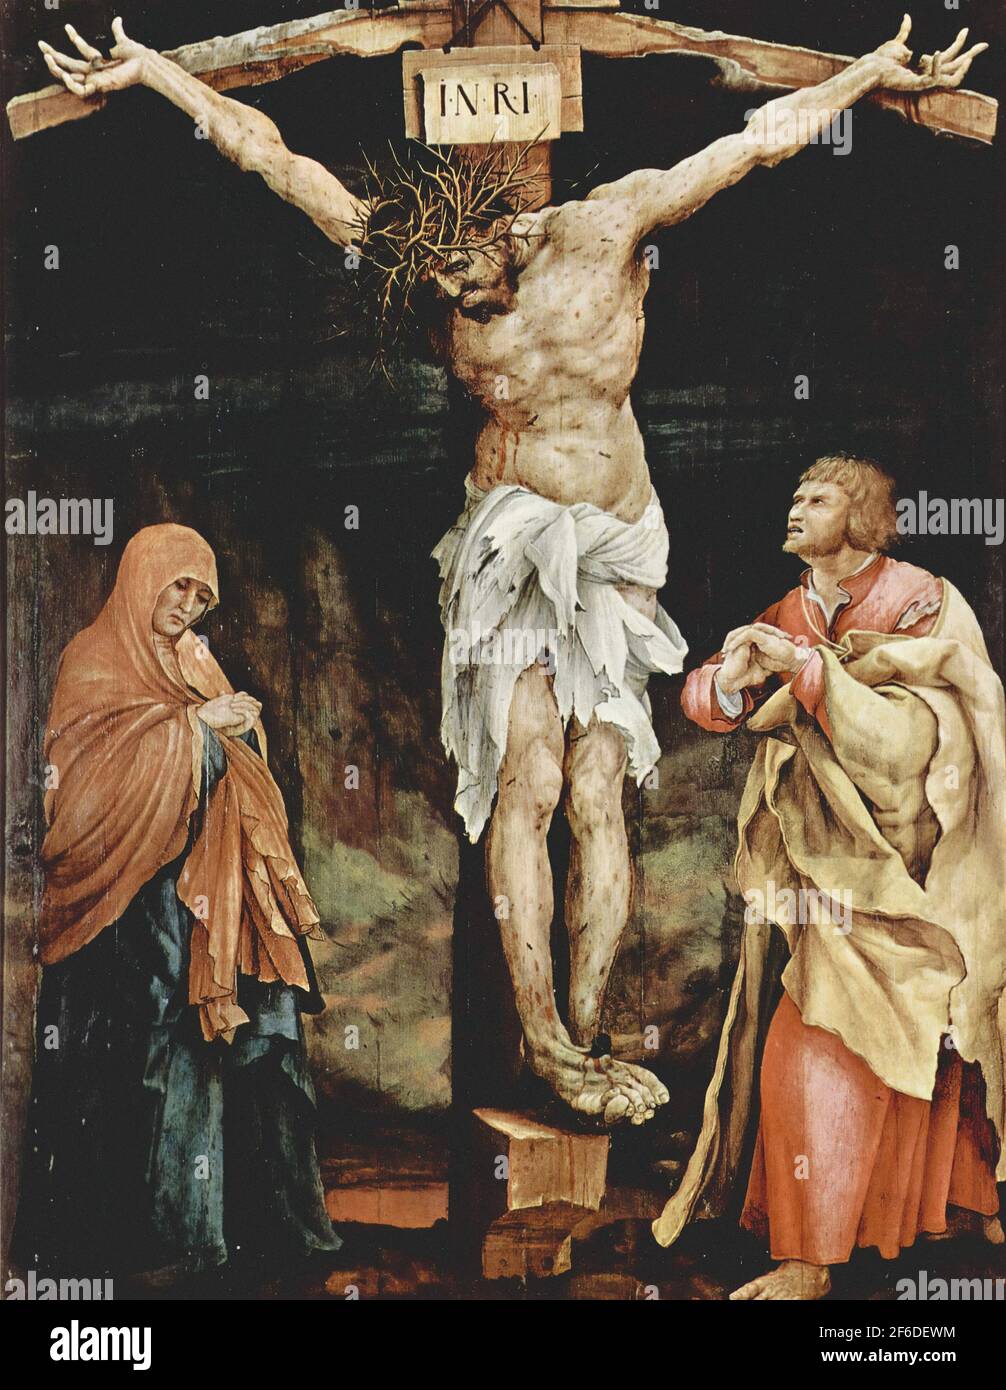 Matthias Grünewald - Crucifixion 1524 Stock Photo - Alamy